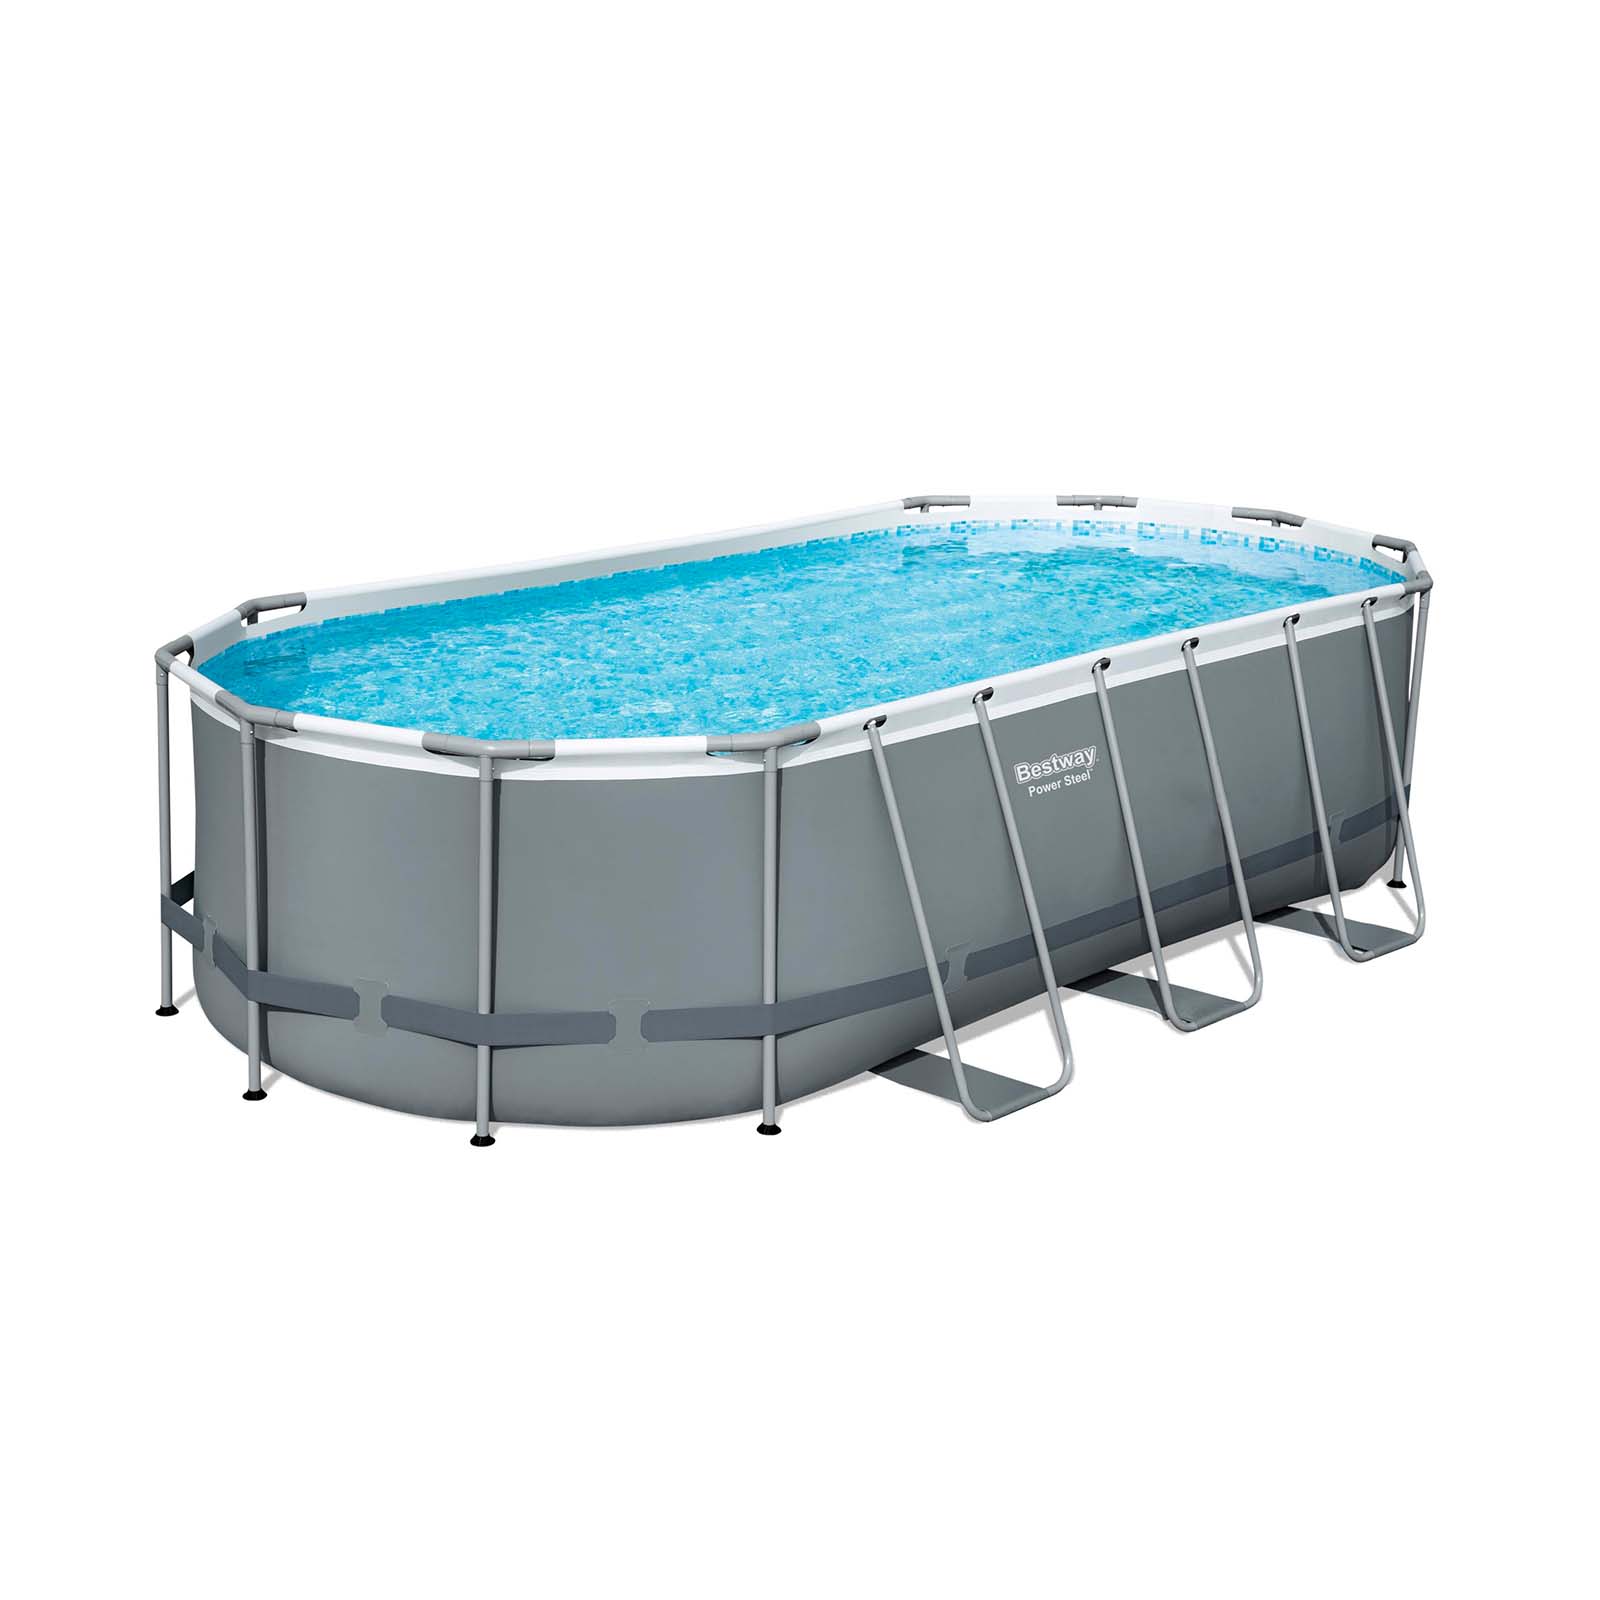 Conjunto de piscina sobre superficie Power Steel de Bestway de 5.49 m x 2.74 m x 1.22 m